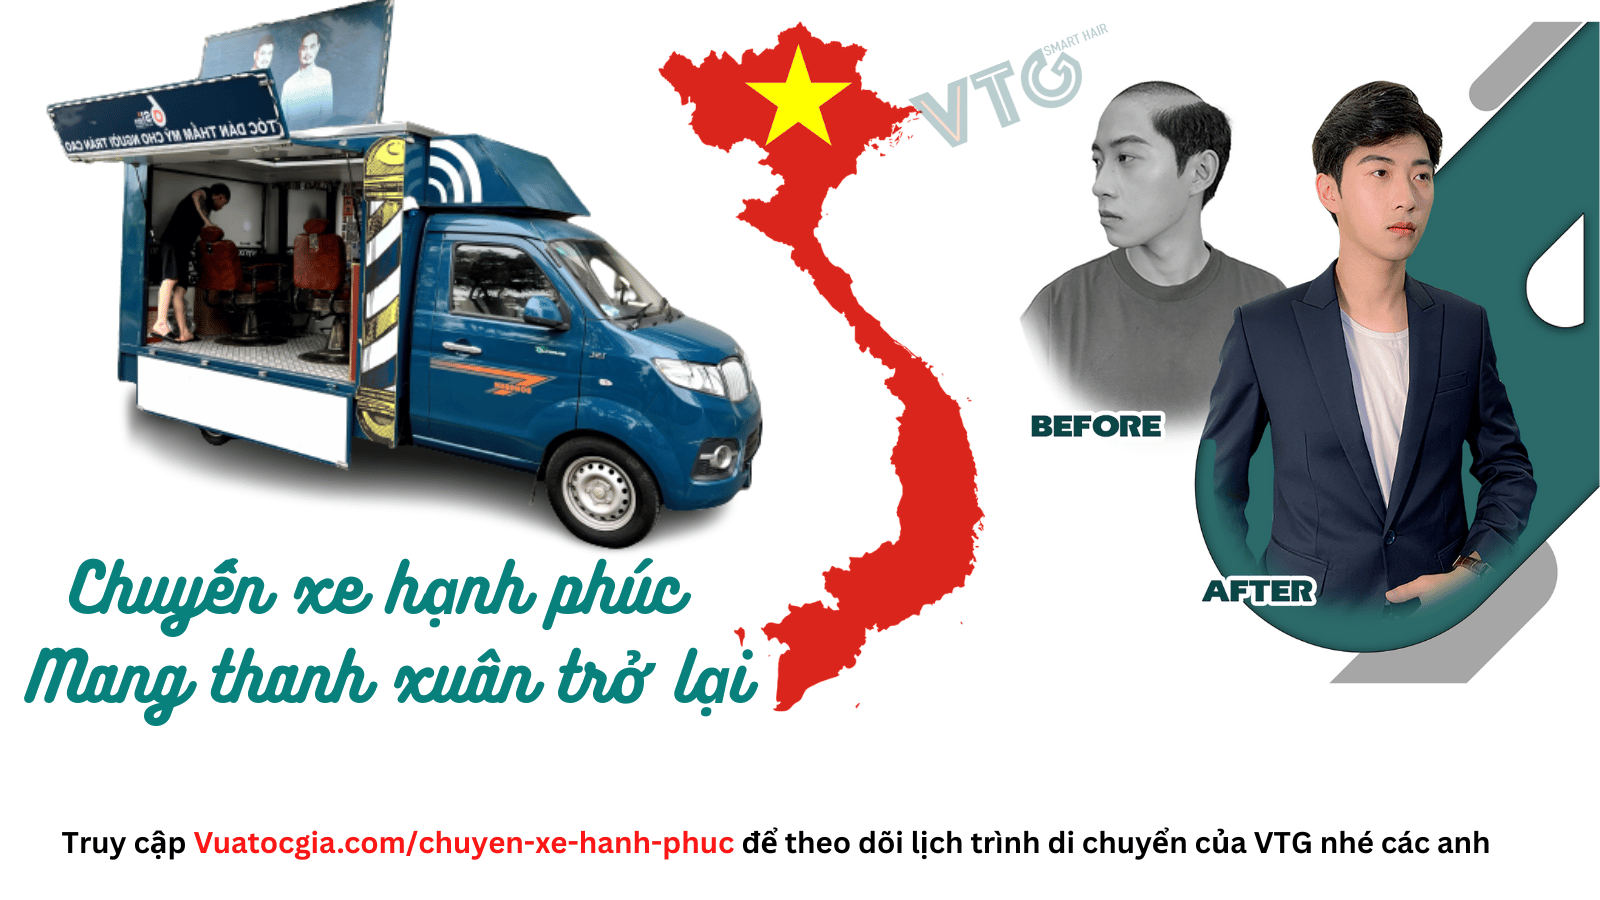 Chuyen xe hanh phuc mang thanh xuan tro lai 1 1